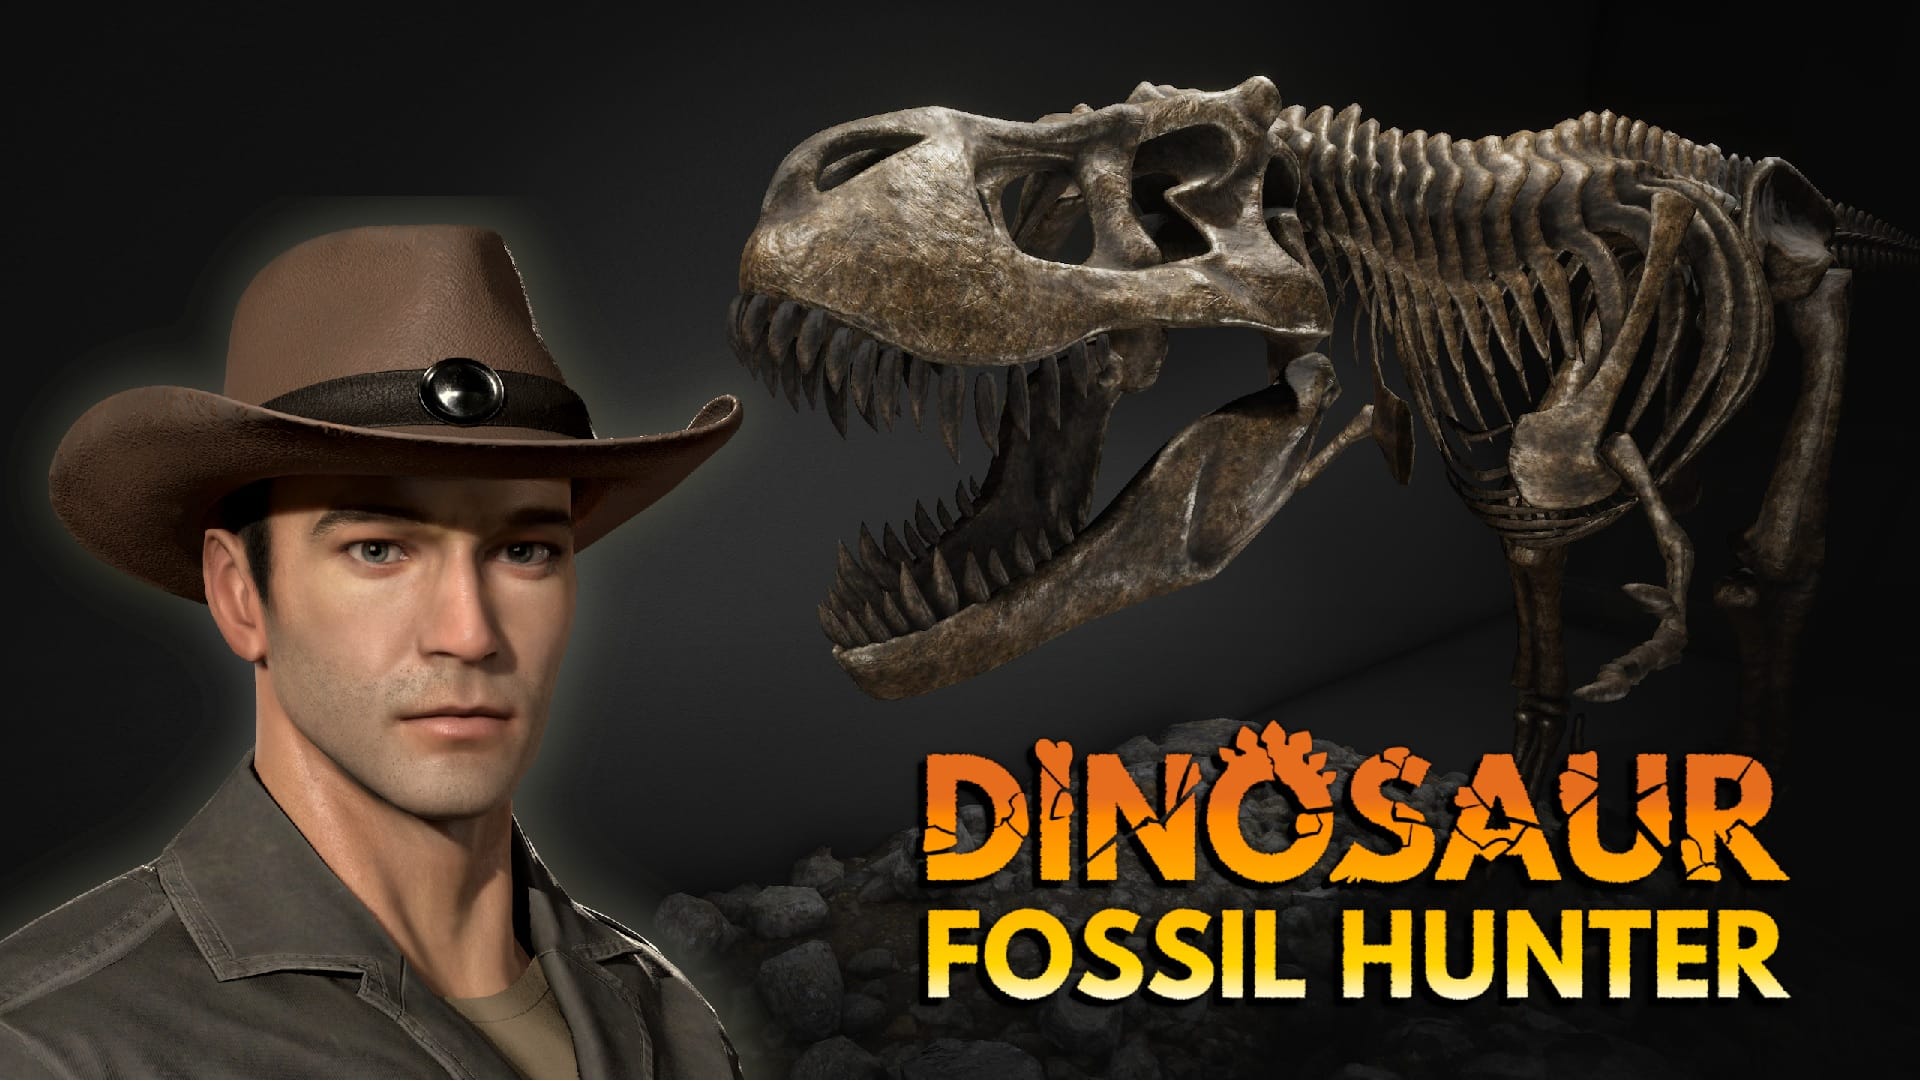 Dinosaur fossil hunter